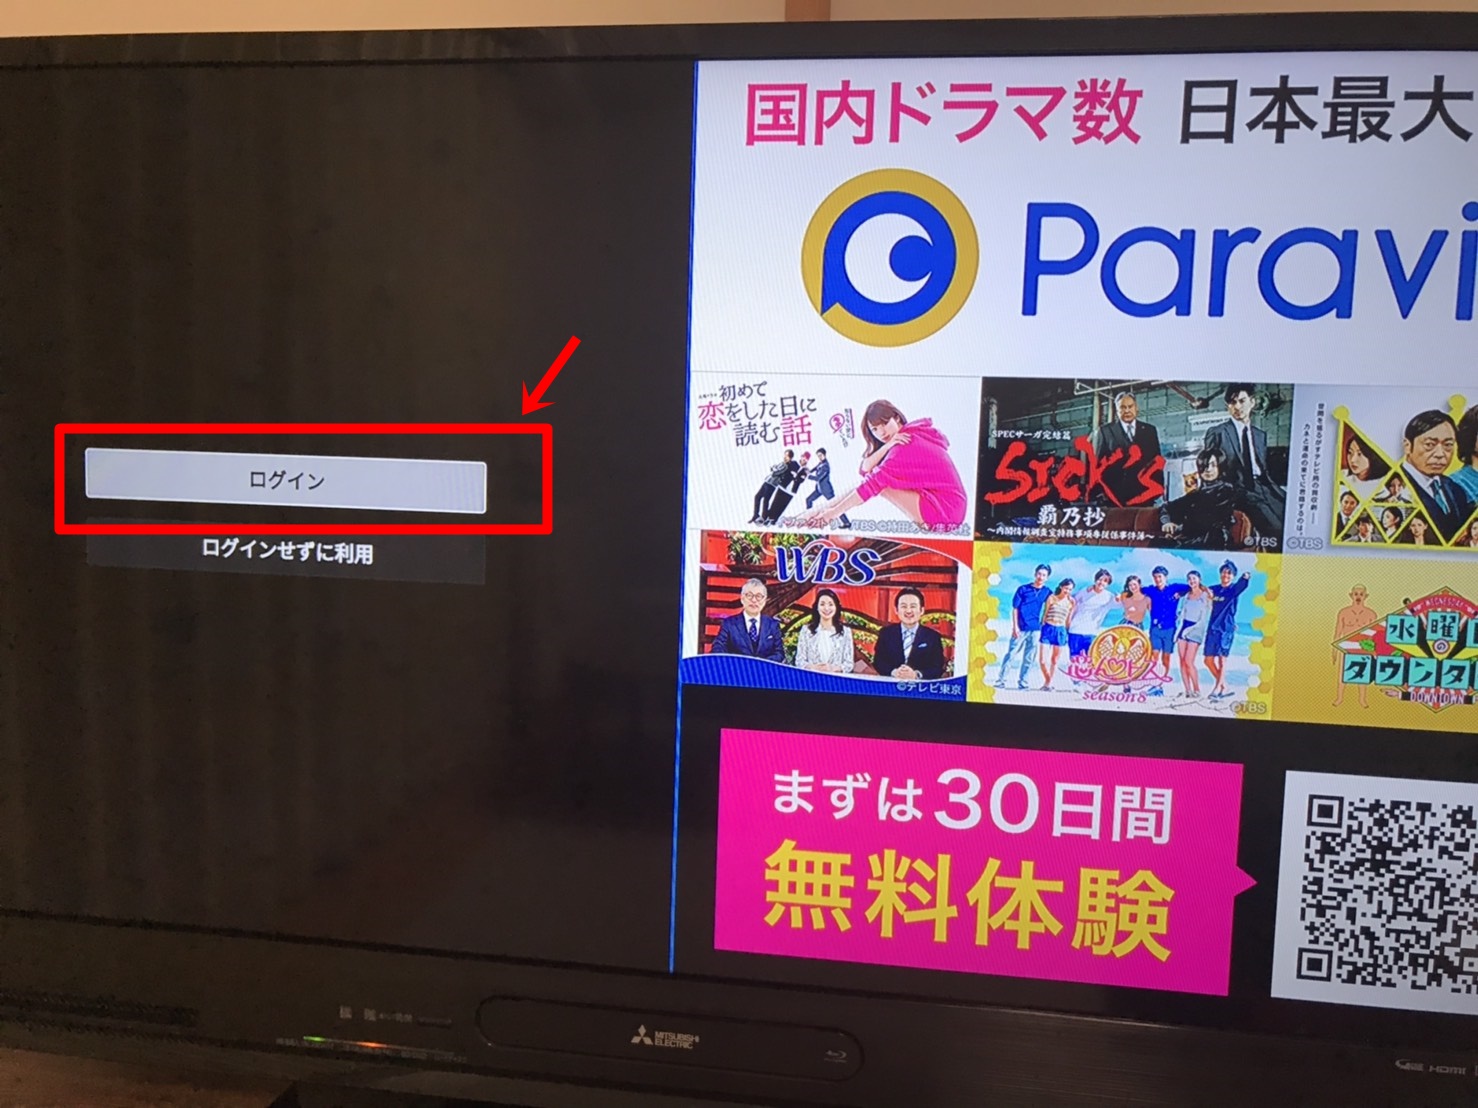 Fire TV Stickを使ってParaviをテレビで見る方法